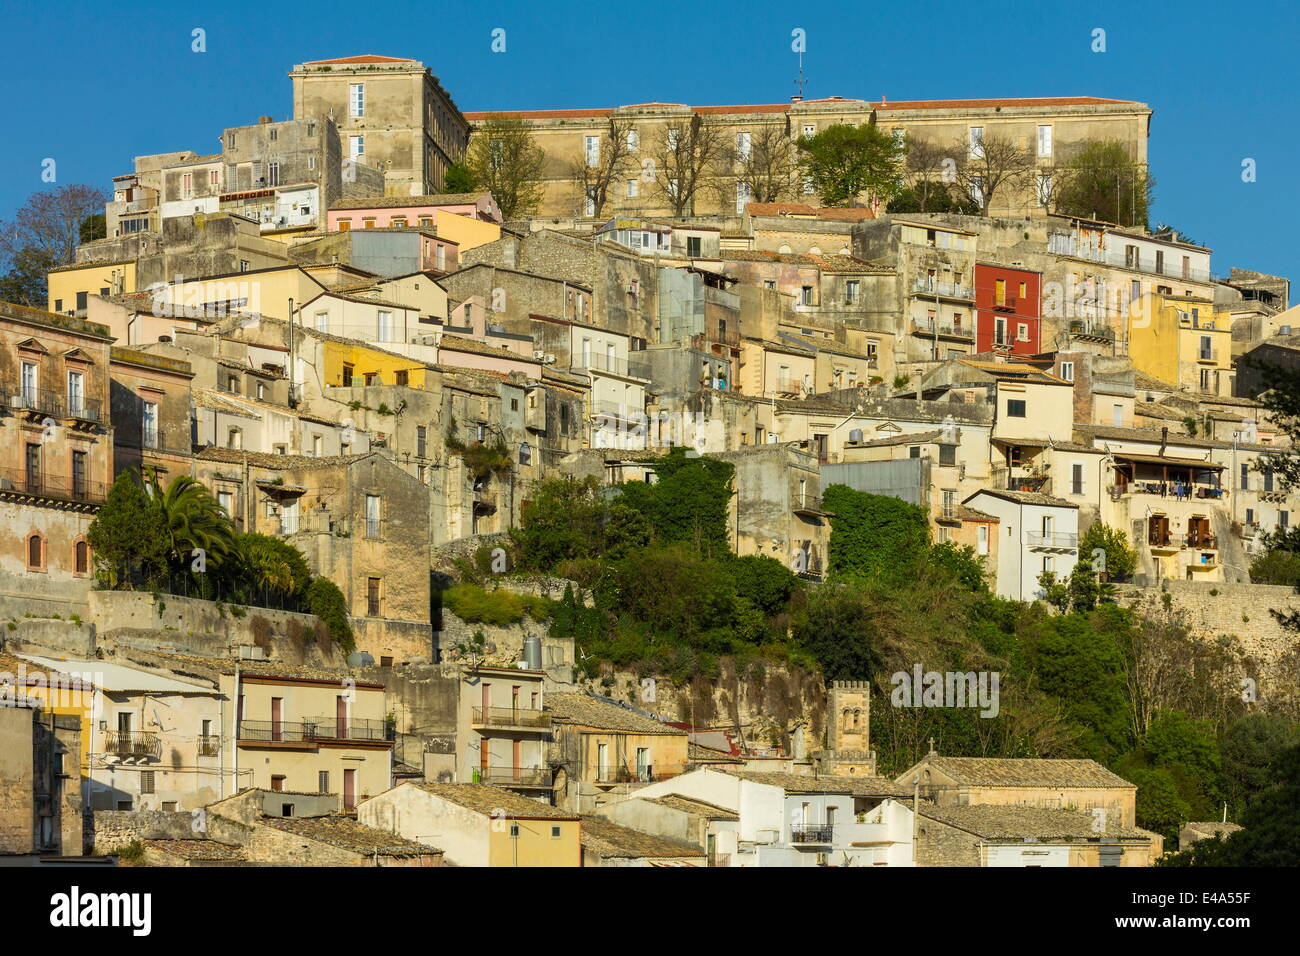 Vieux Ragusa Ibla (descente), célèbre pour l'architecture baroque sicilienne, l'UNESCO, Raguse, Ragusa, Sicile, Italie Banque D'Images